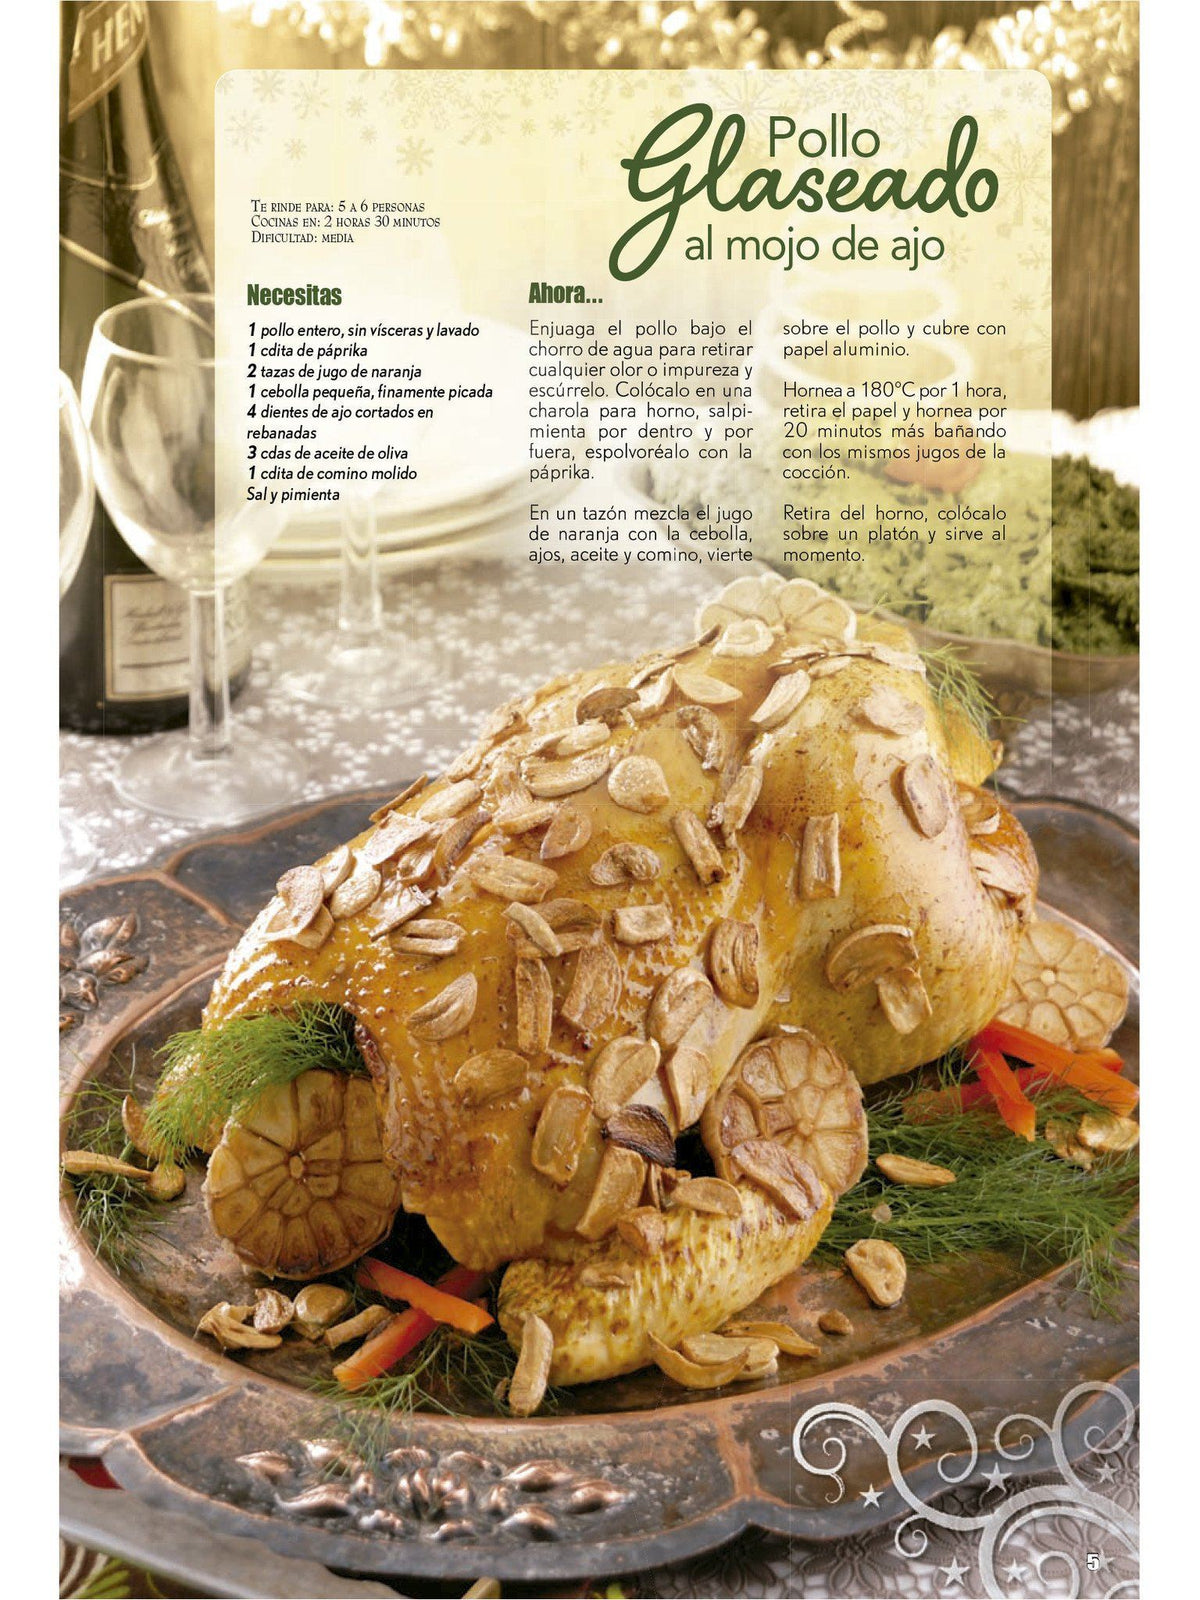 Delicias con Pollo Especial 23 - Pavos y pollo para Navidad - Formato Digital - ToukanMango